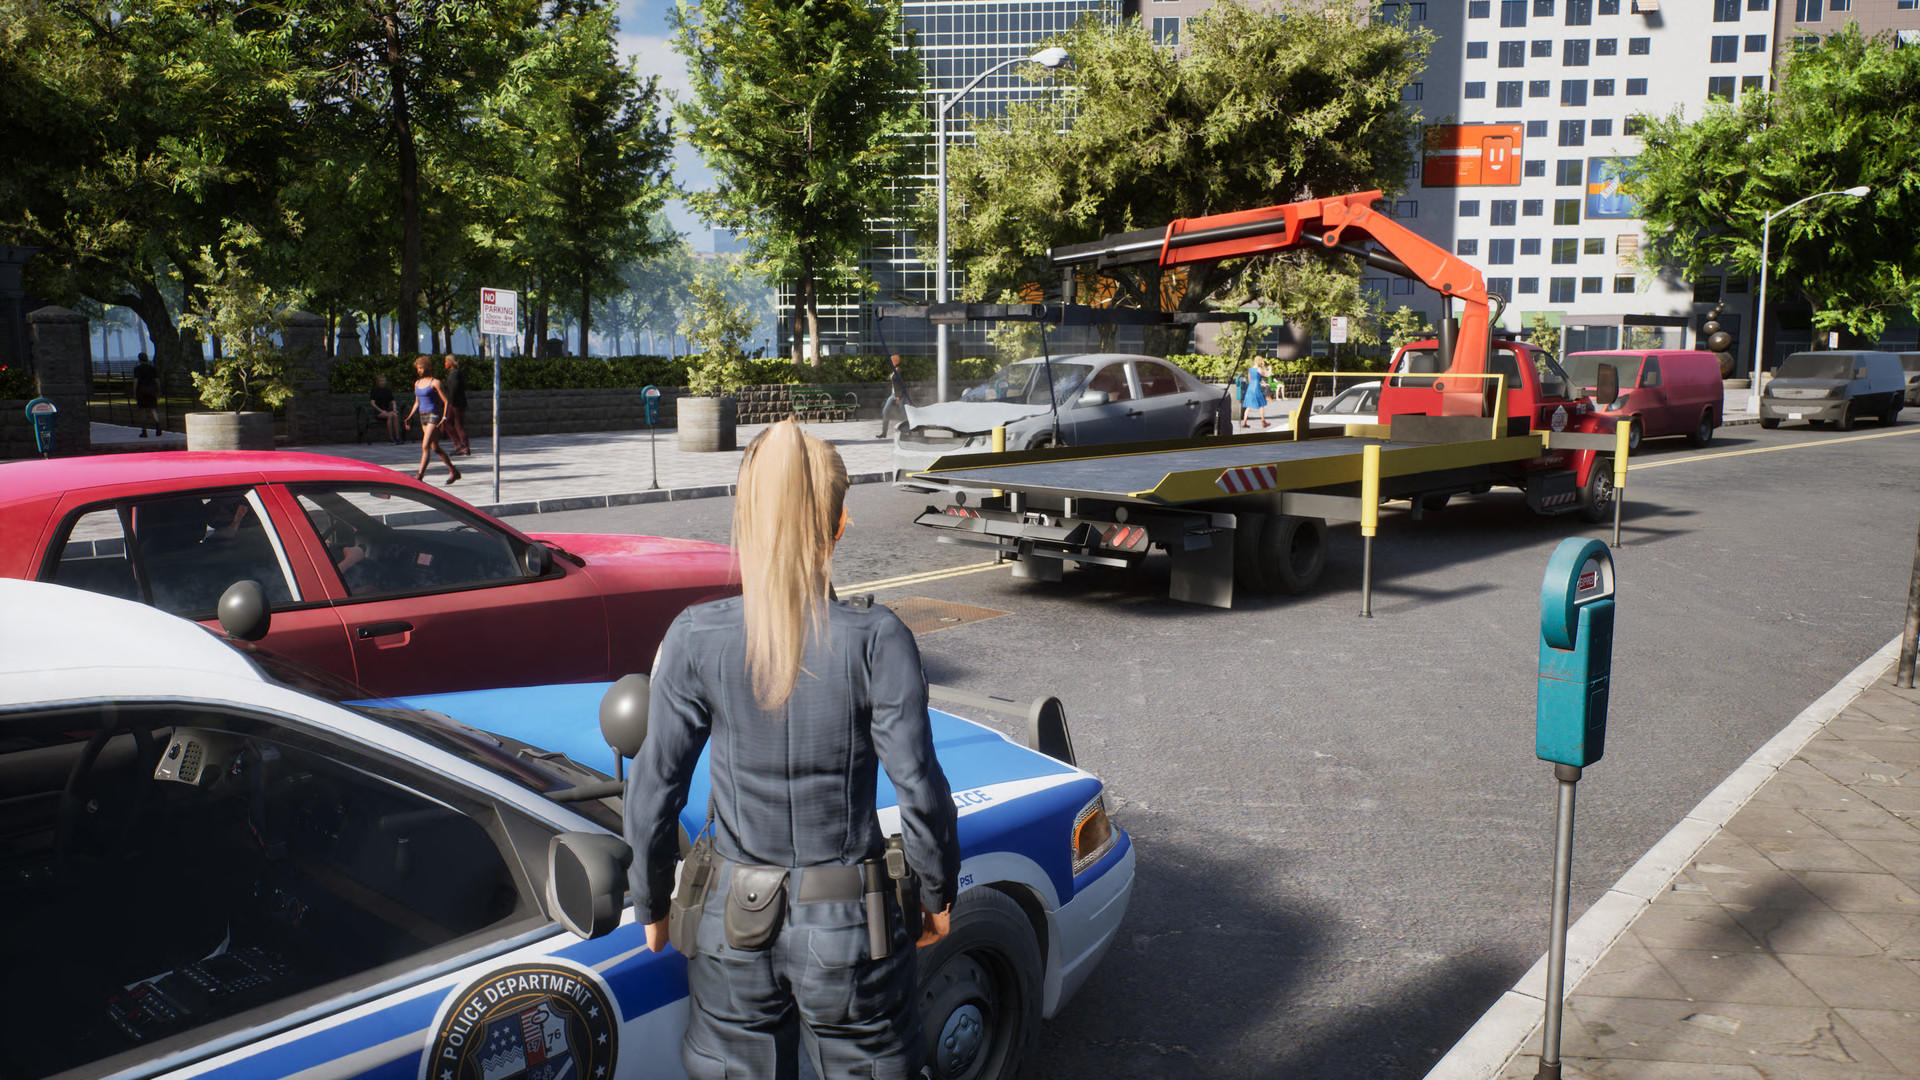 Police Simulator Patrol 3D screenshot game